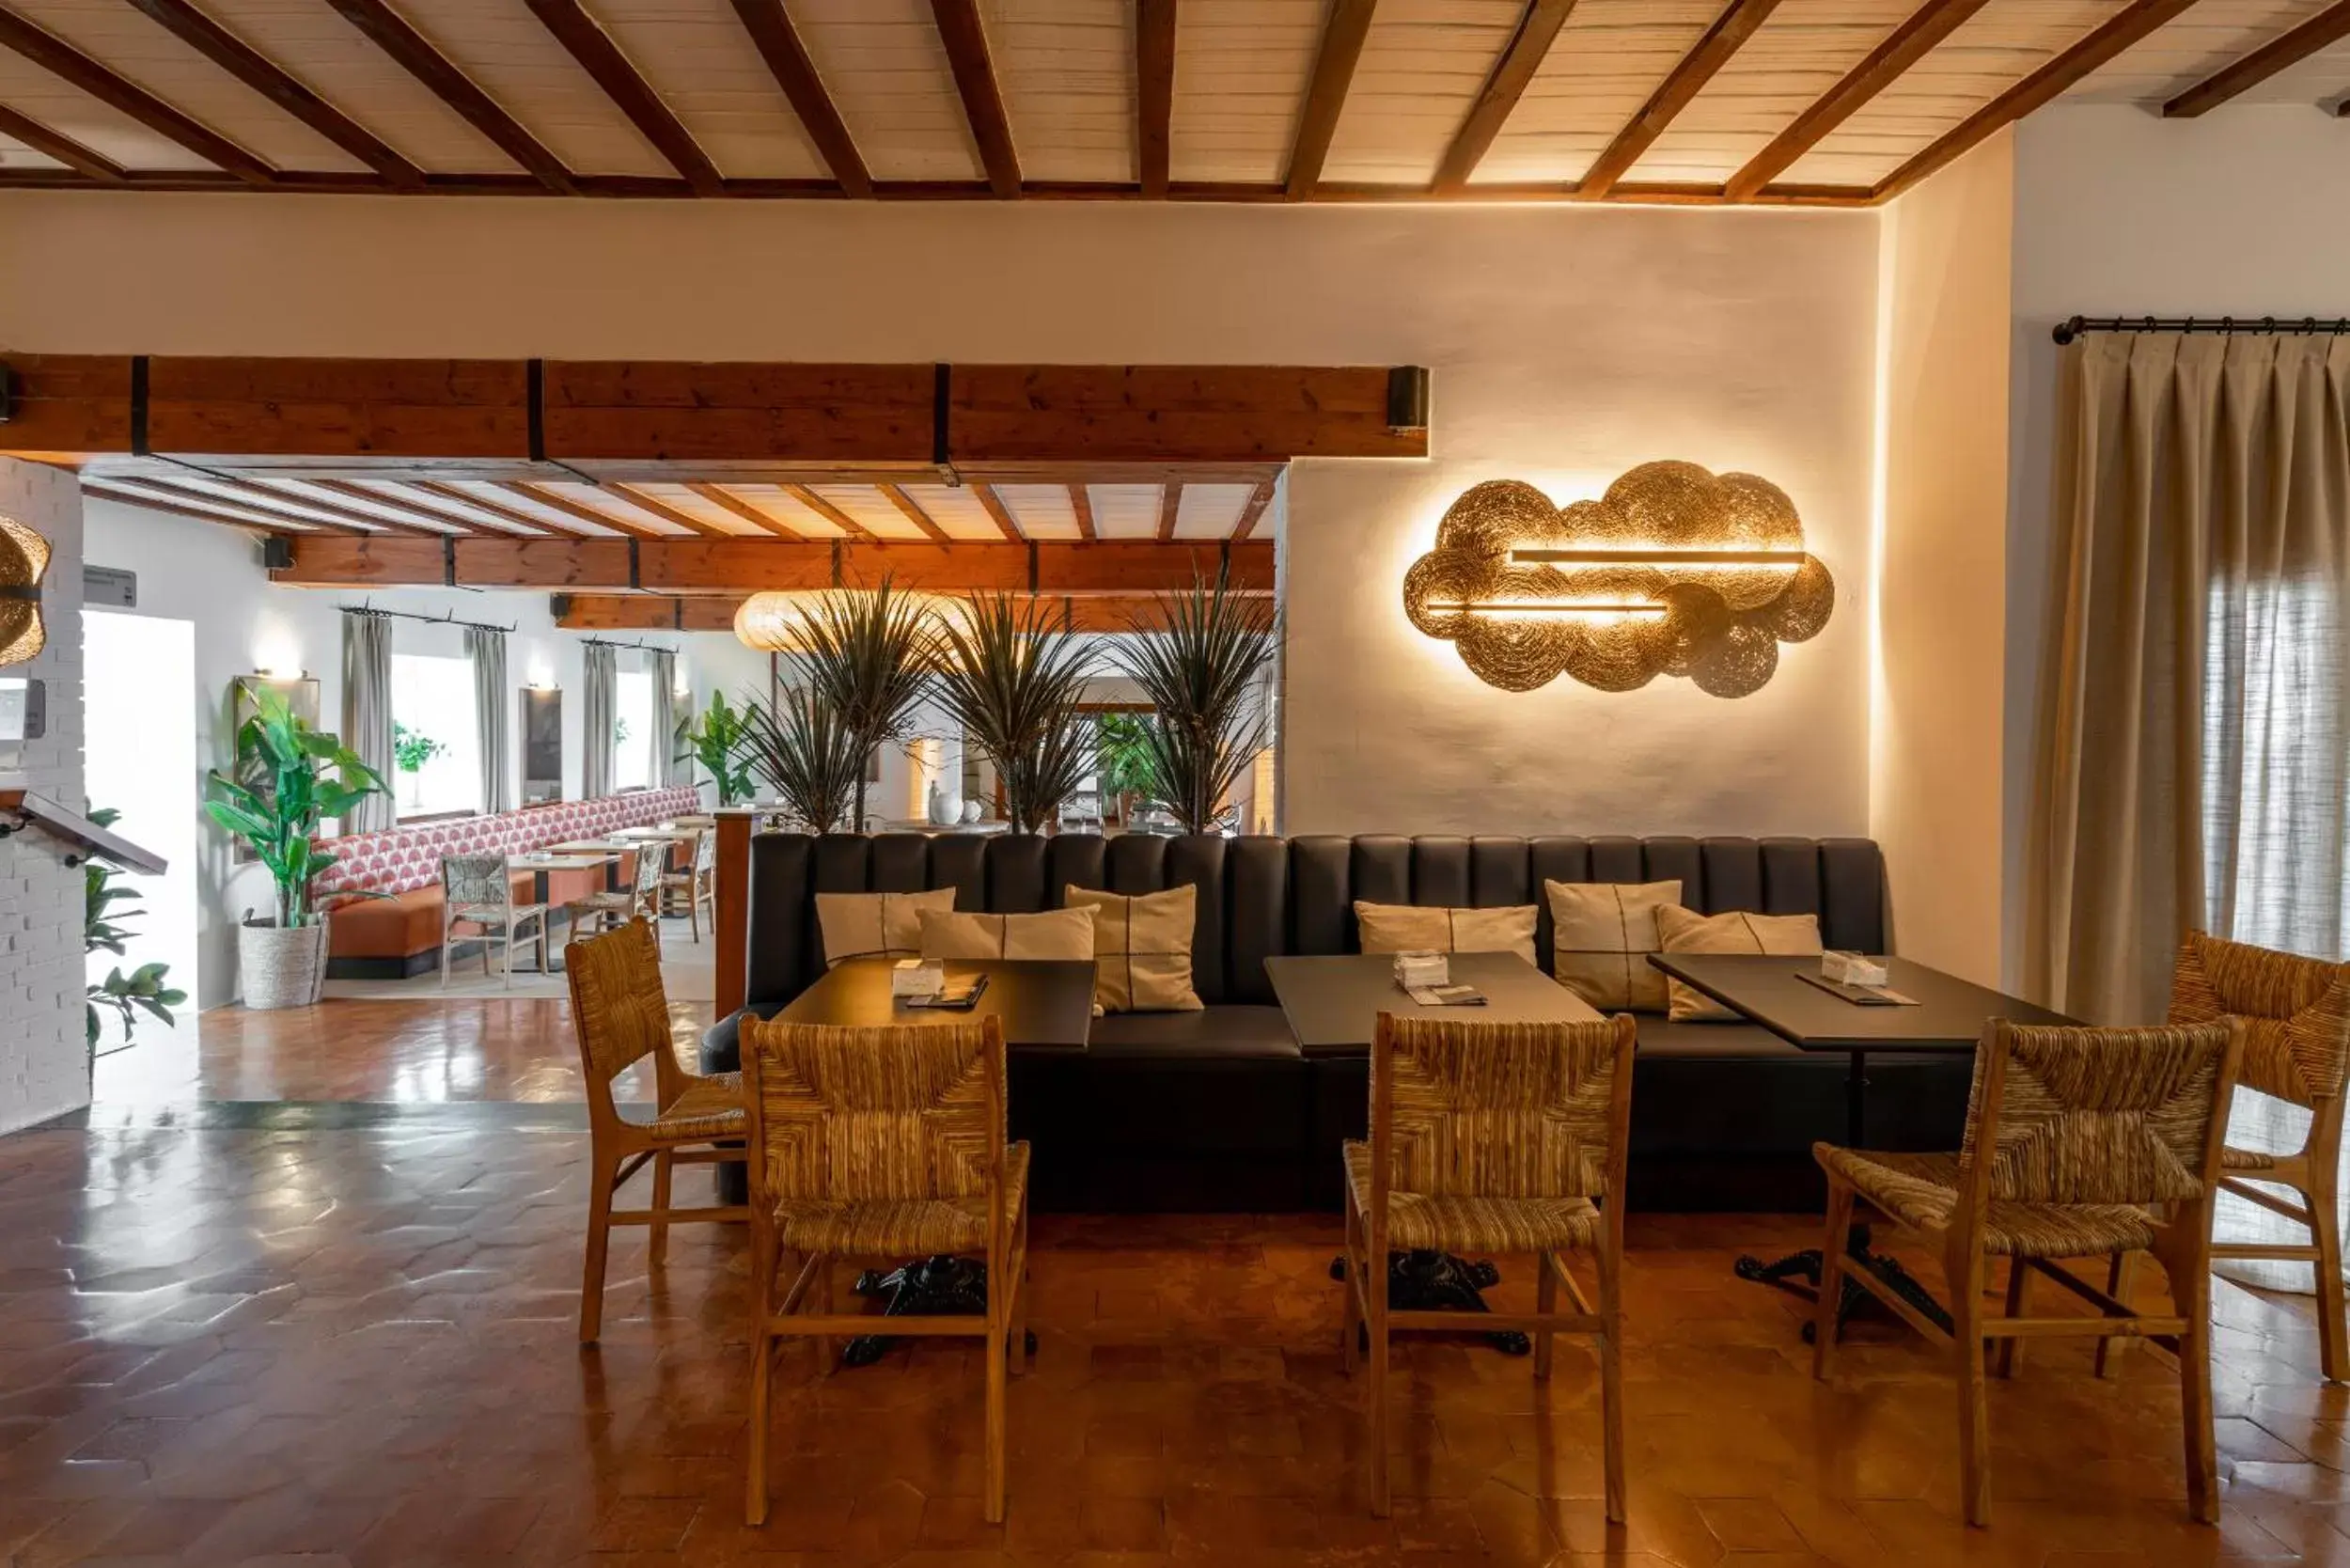 Lounge or bar, Restaurant/Places to Eat in Parador de Mazagón